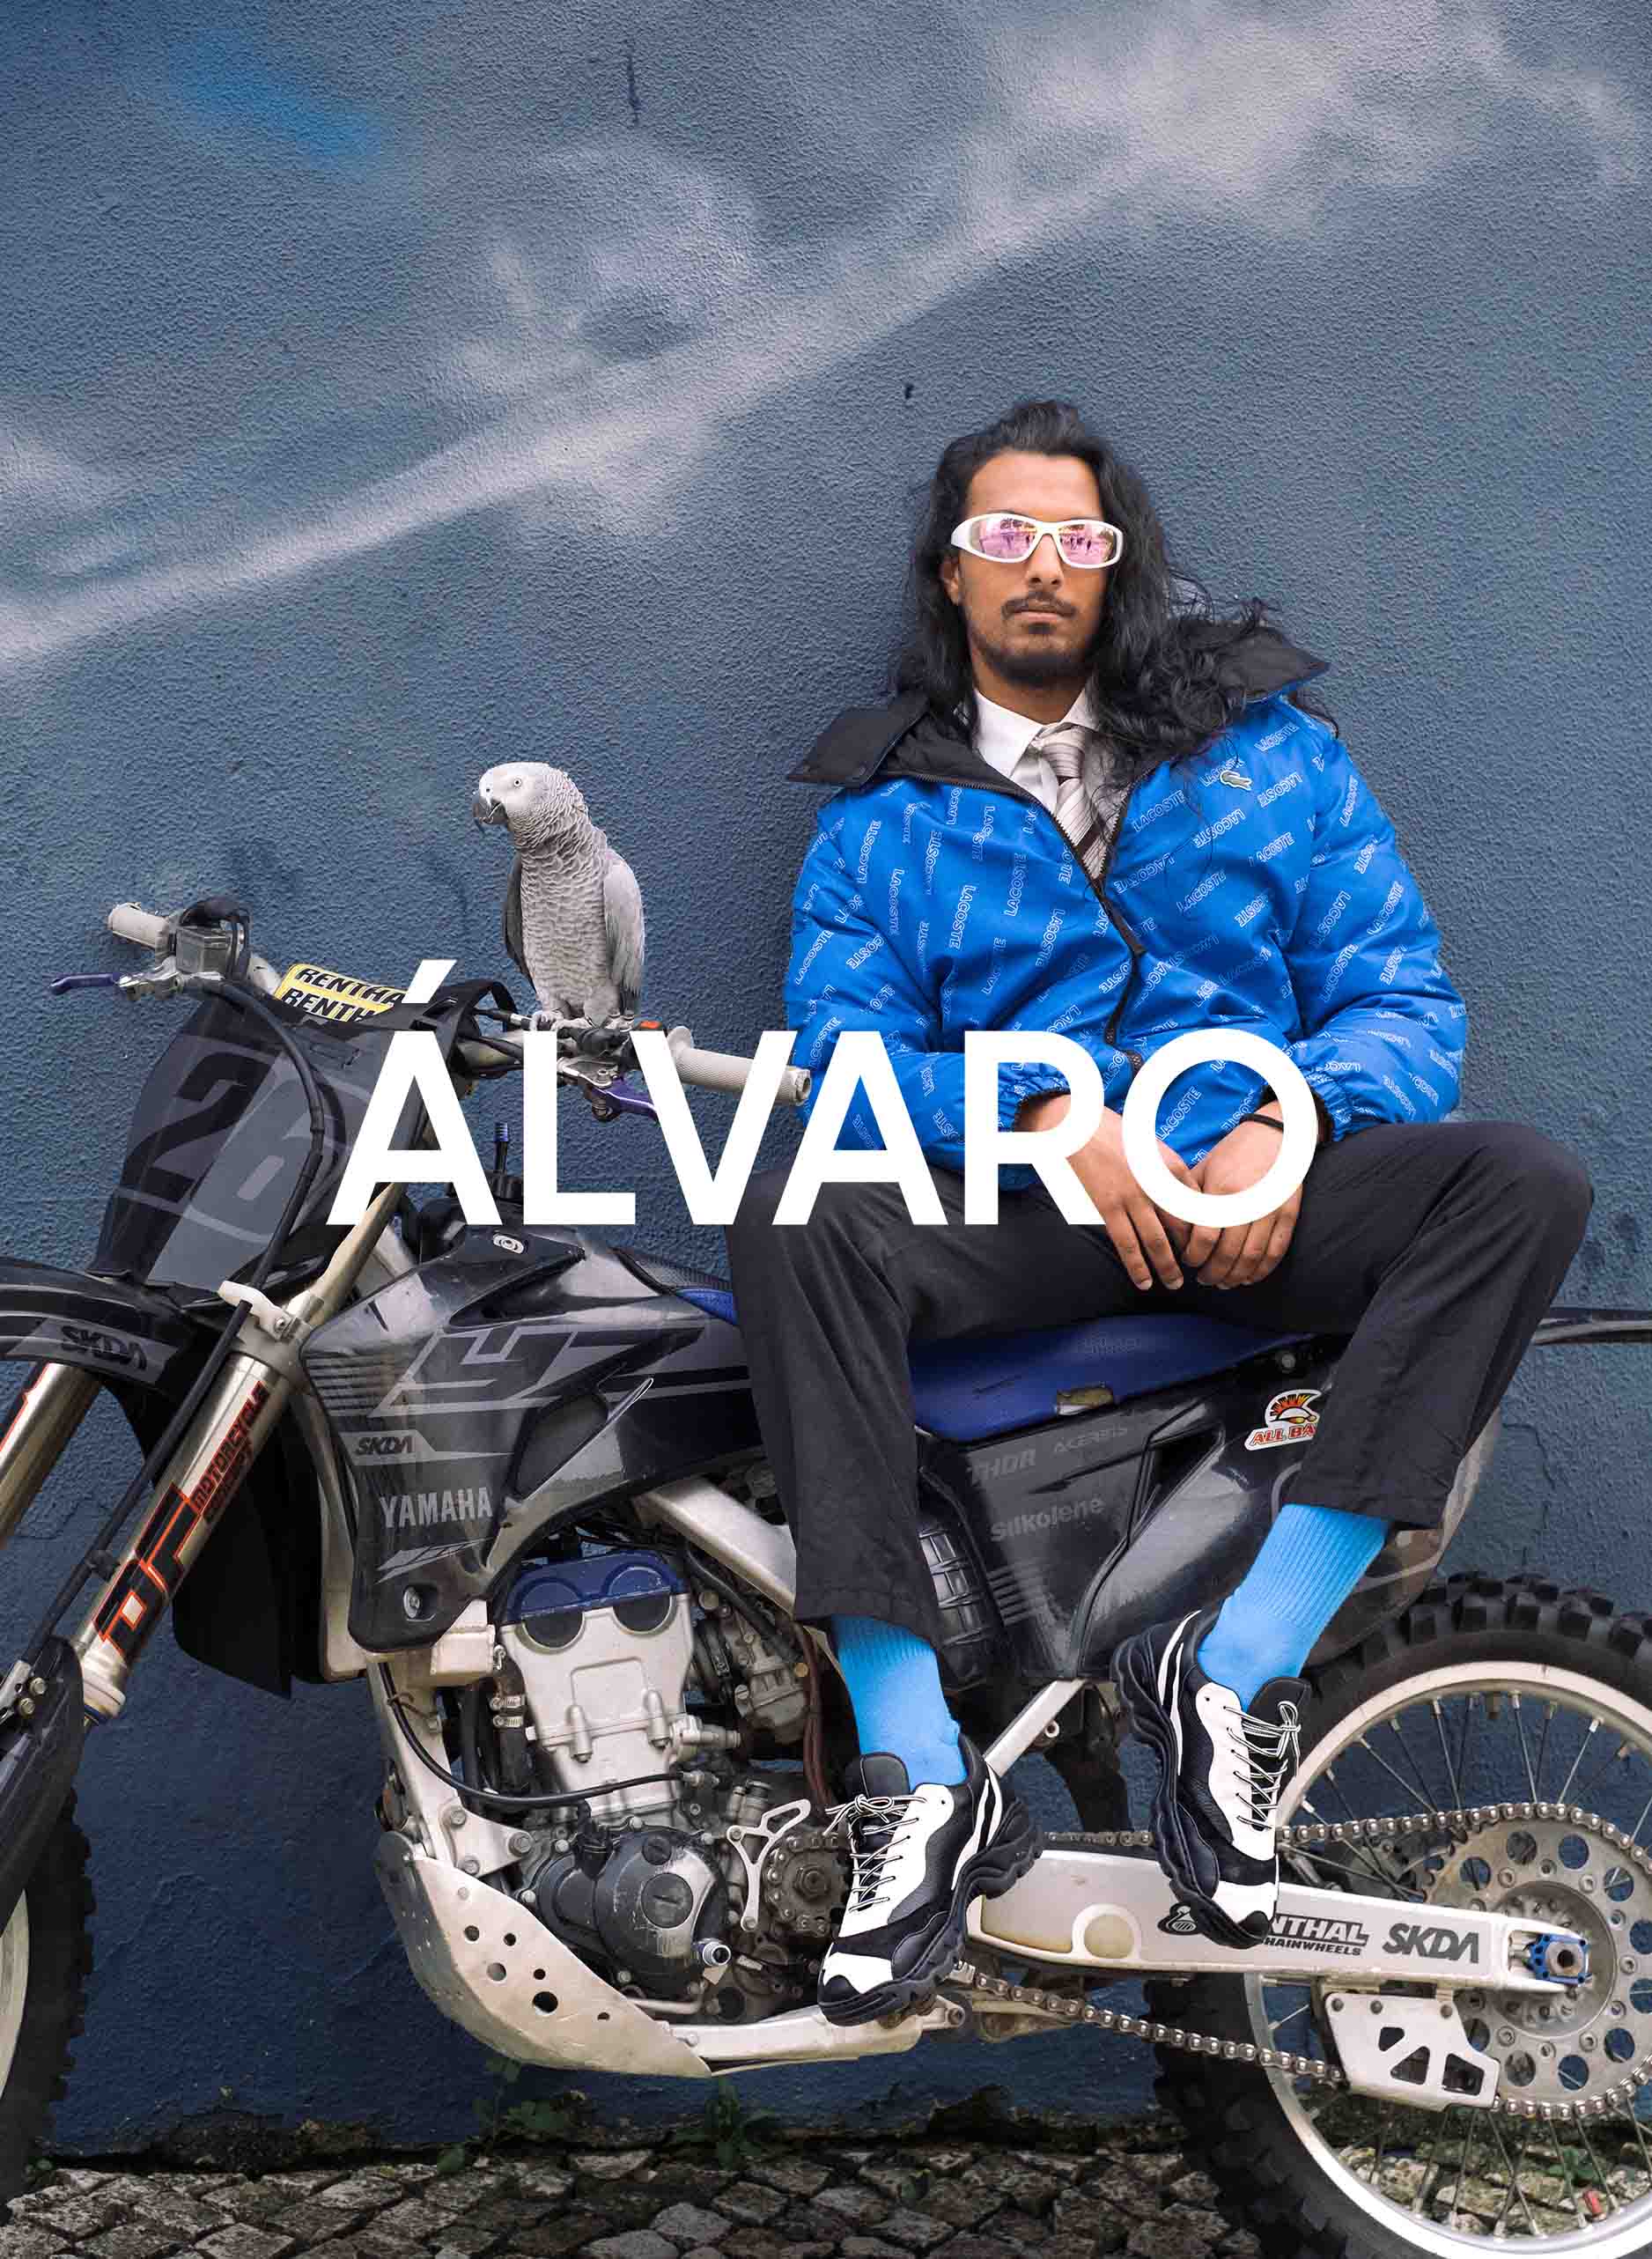 Ein Mann namens Álvaro sitzt auf einem Motorrad mit einem Vogel und trägt Diverge sneakers, Förderung von maßgefertigten Schuhen und sozialer Wirkung durch das IMAGINE-Projekt.